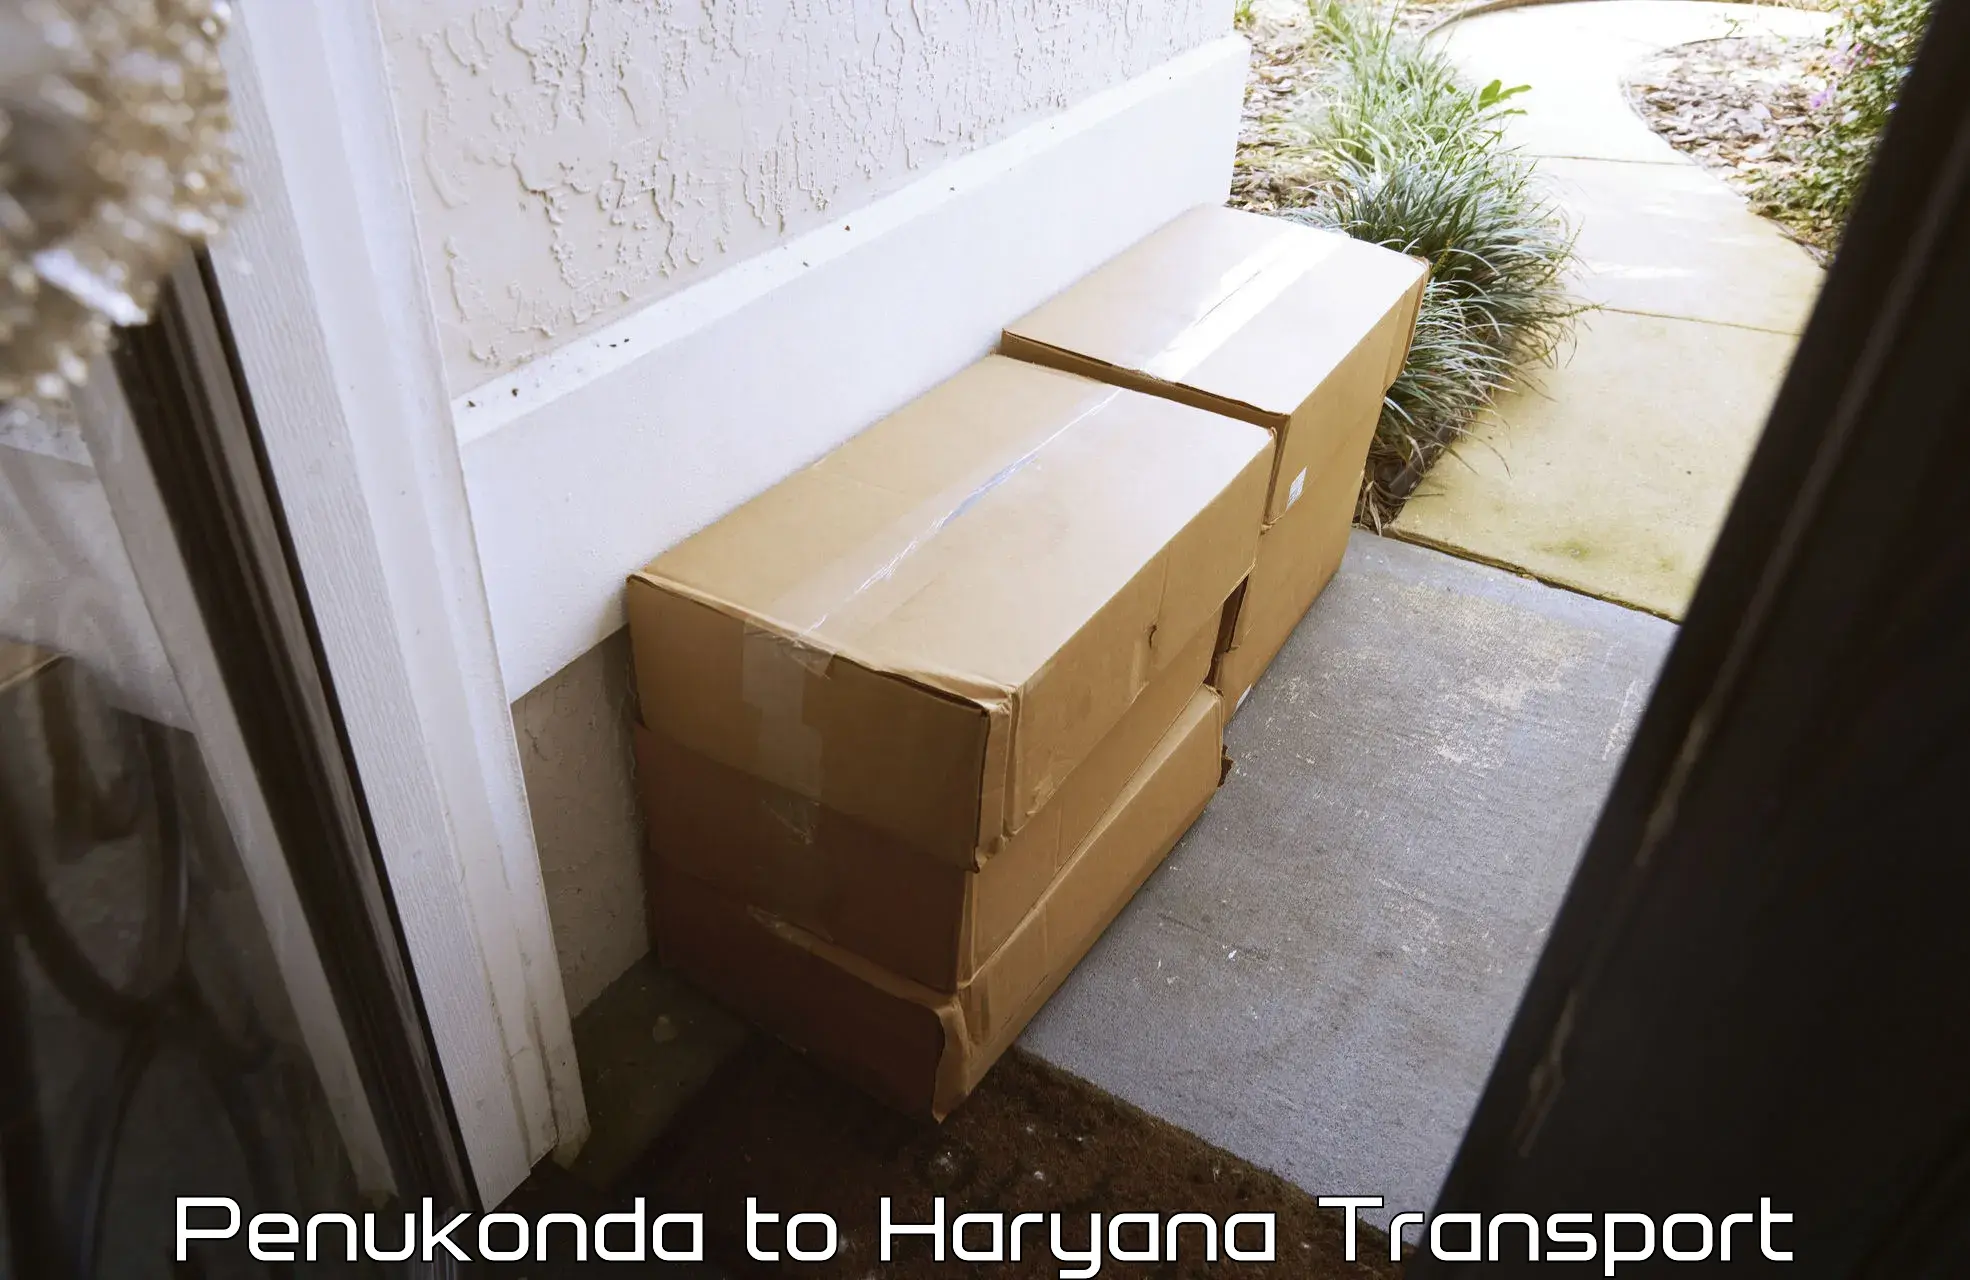 Container transportation services Penukonda to Pataudi